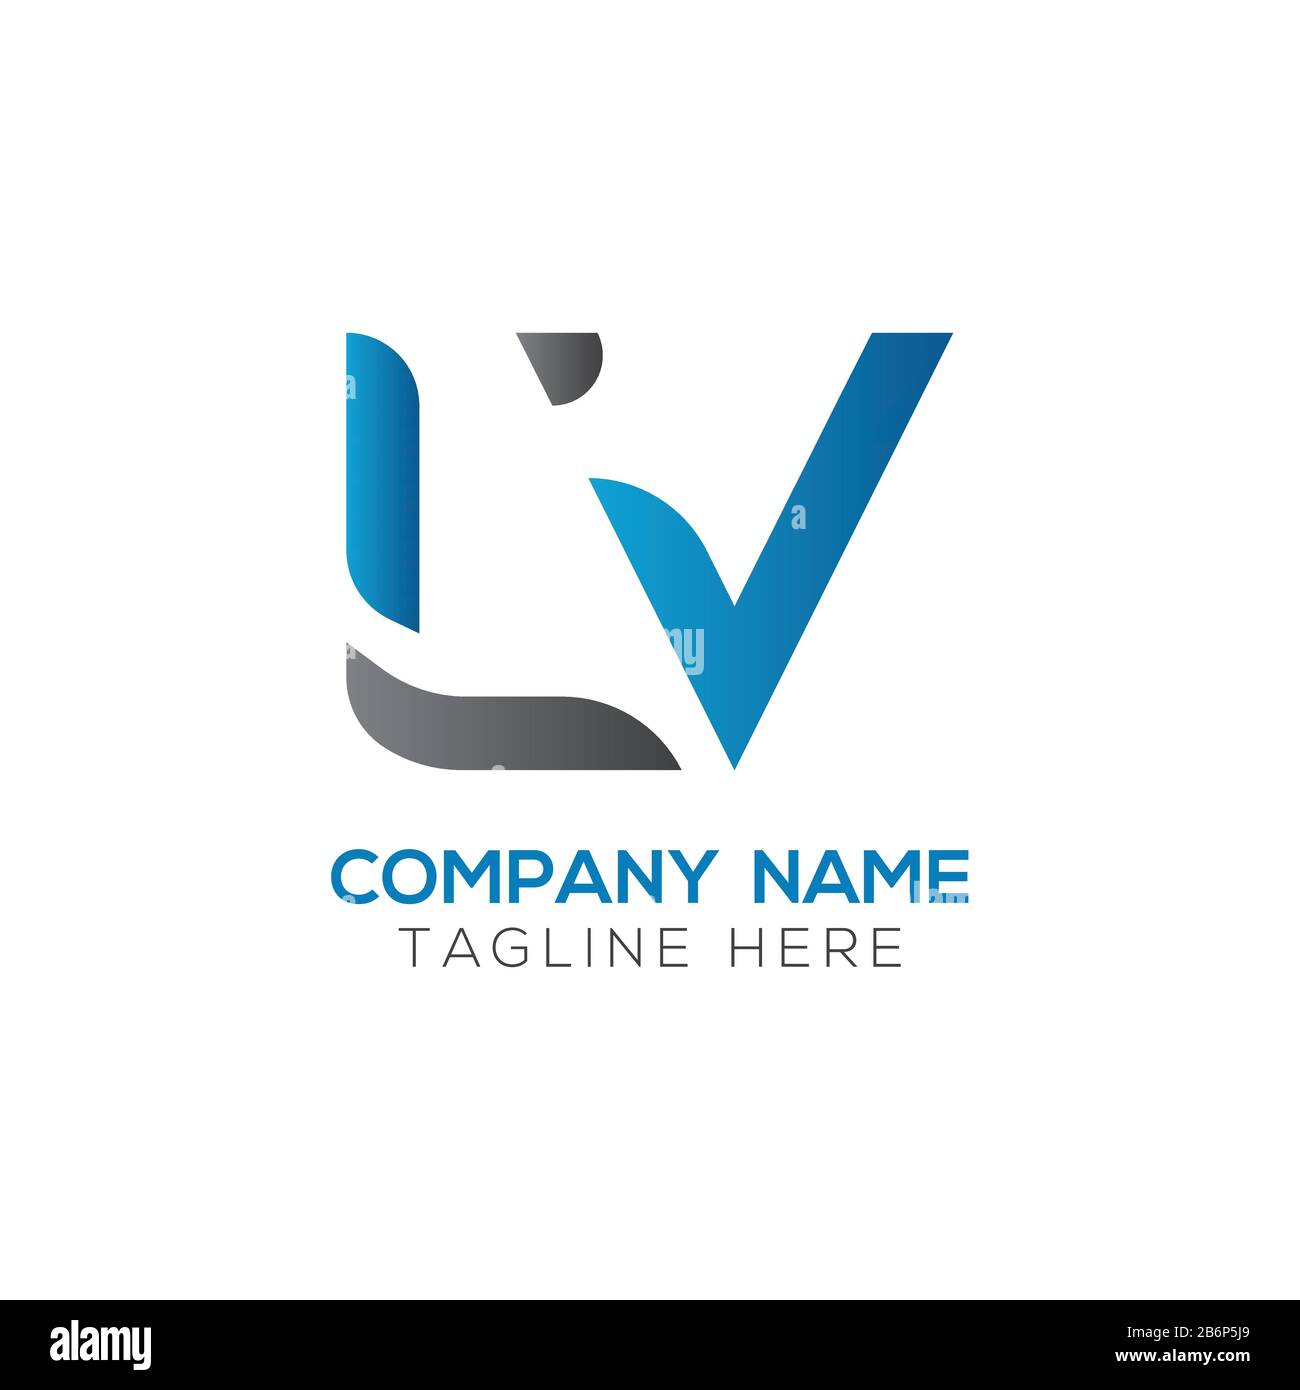 Louis Vuitton logo Stock Photo - Alamy